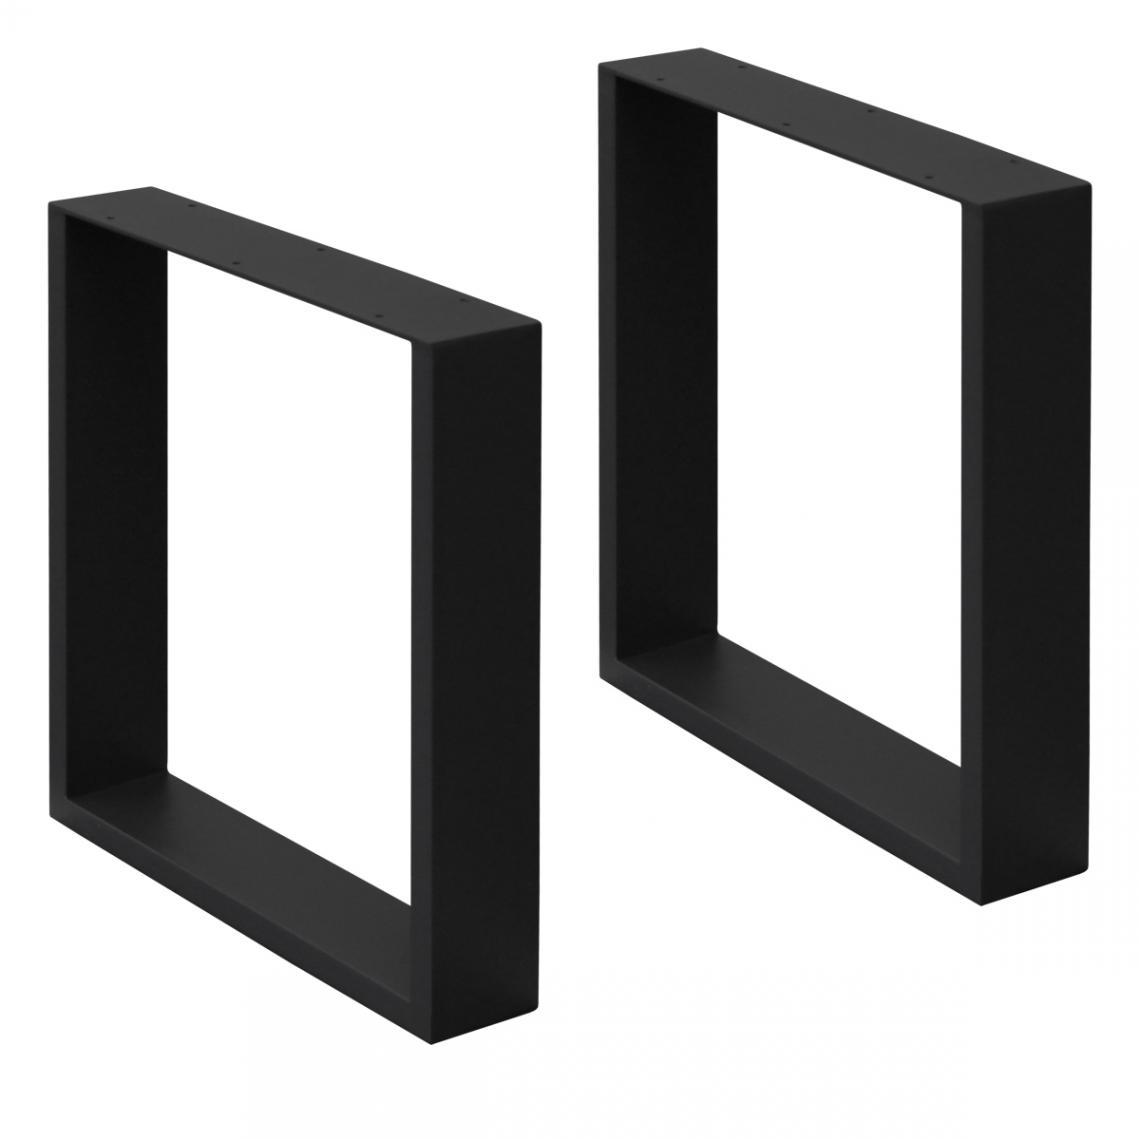 Ecd Germany - 2 x Pieds de table en acier noir 40 x 43 cm support rectangulaire style moderne - Pieds & roulettes pour meuble